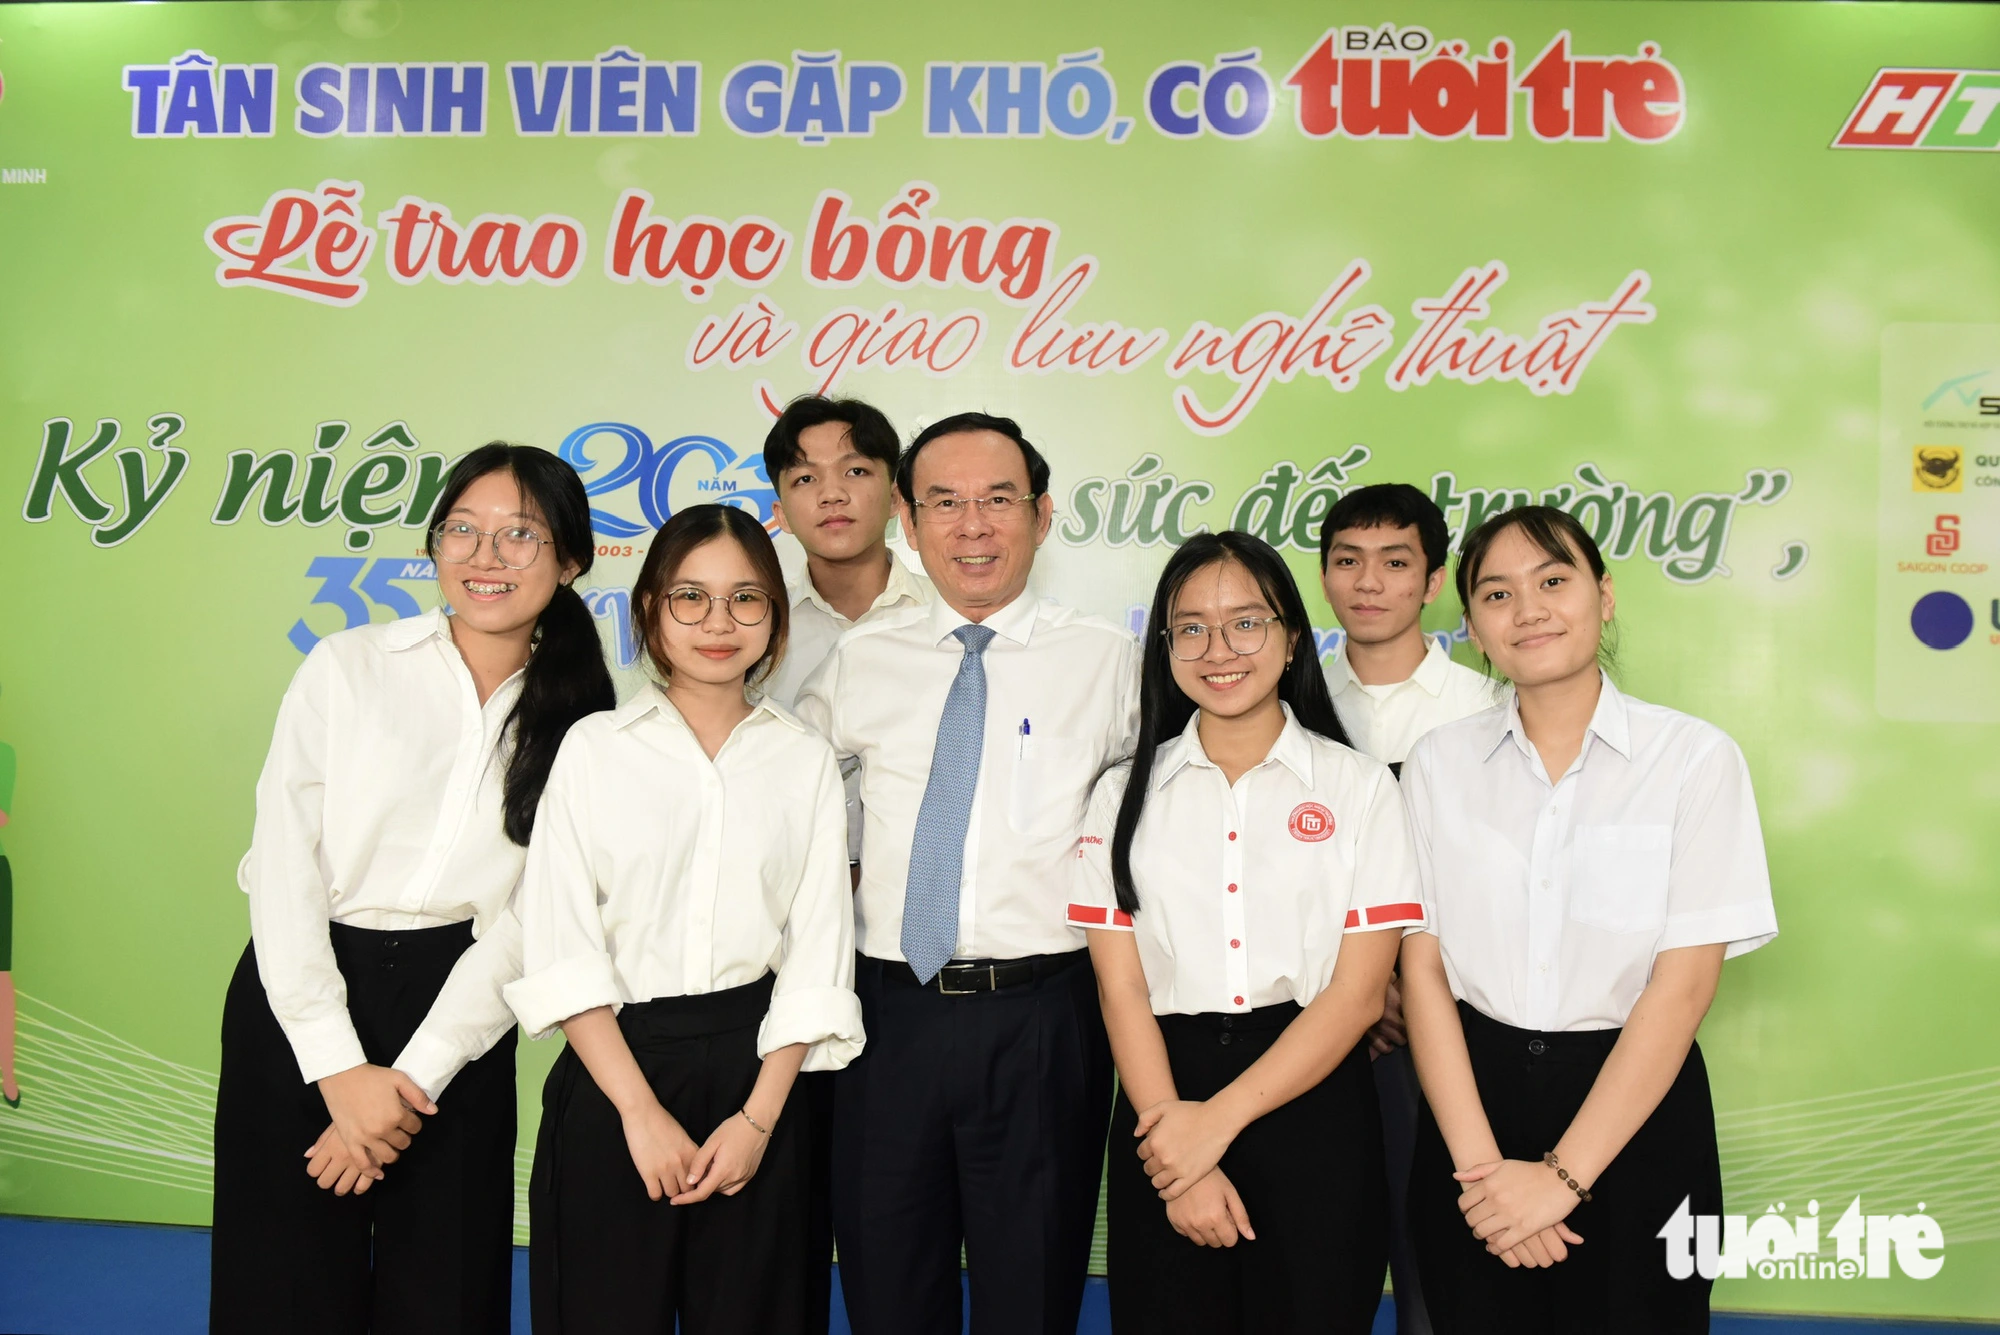 Trao học bổng cho 138 tân sinh viên vùng Đông Nam Bộ, ghi dấu hành trình 20 mùa gieo quả ngọt